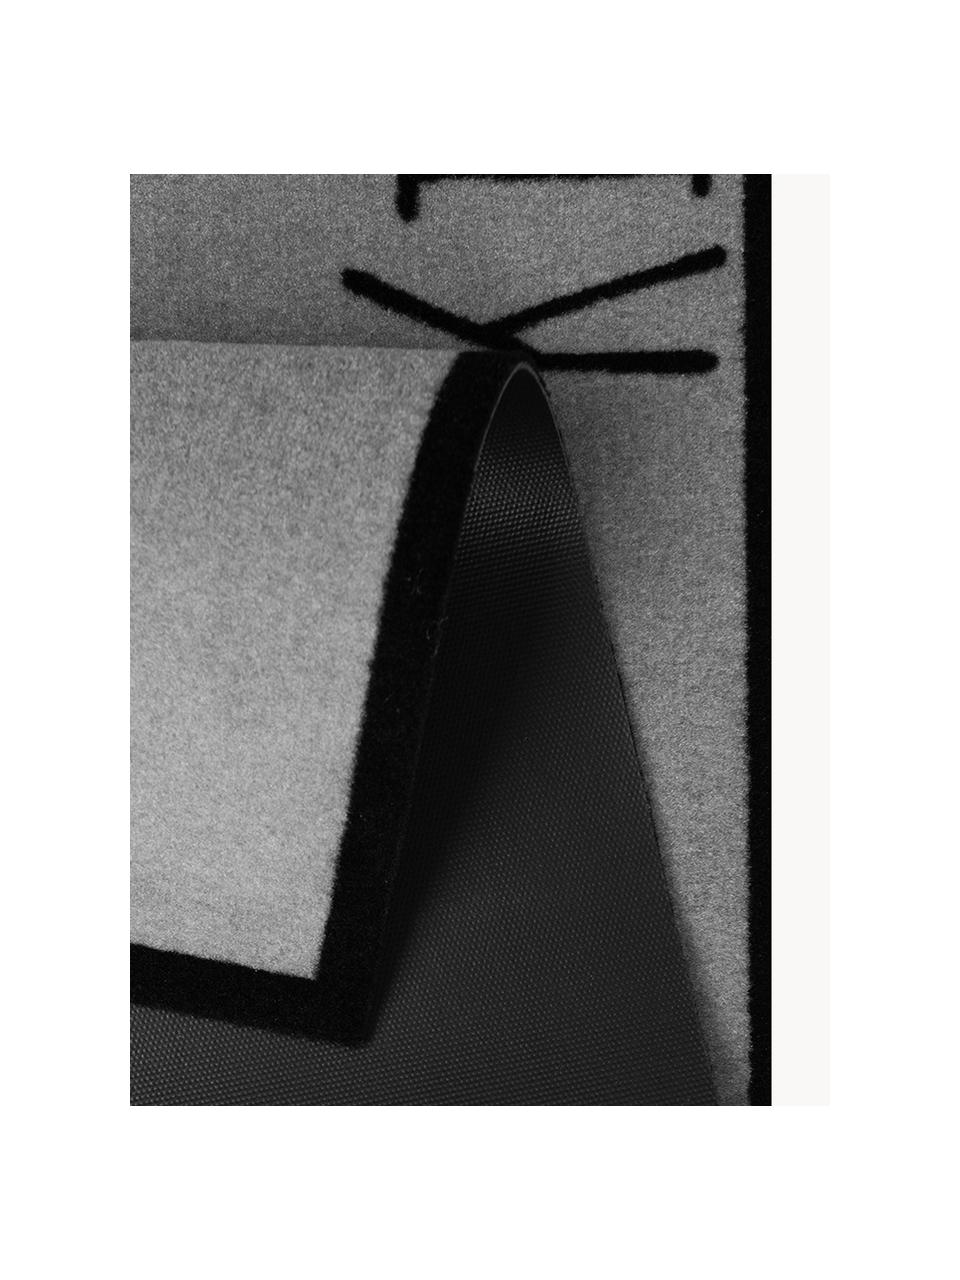 Chodnik Kitchen Cutlery, Szary, czarny, S 50 x D 150 cm